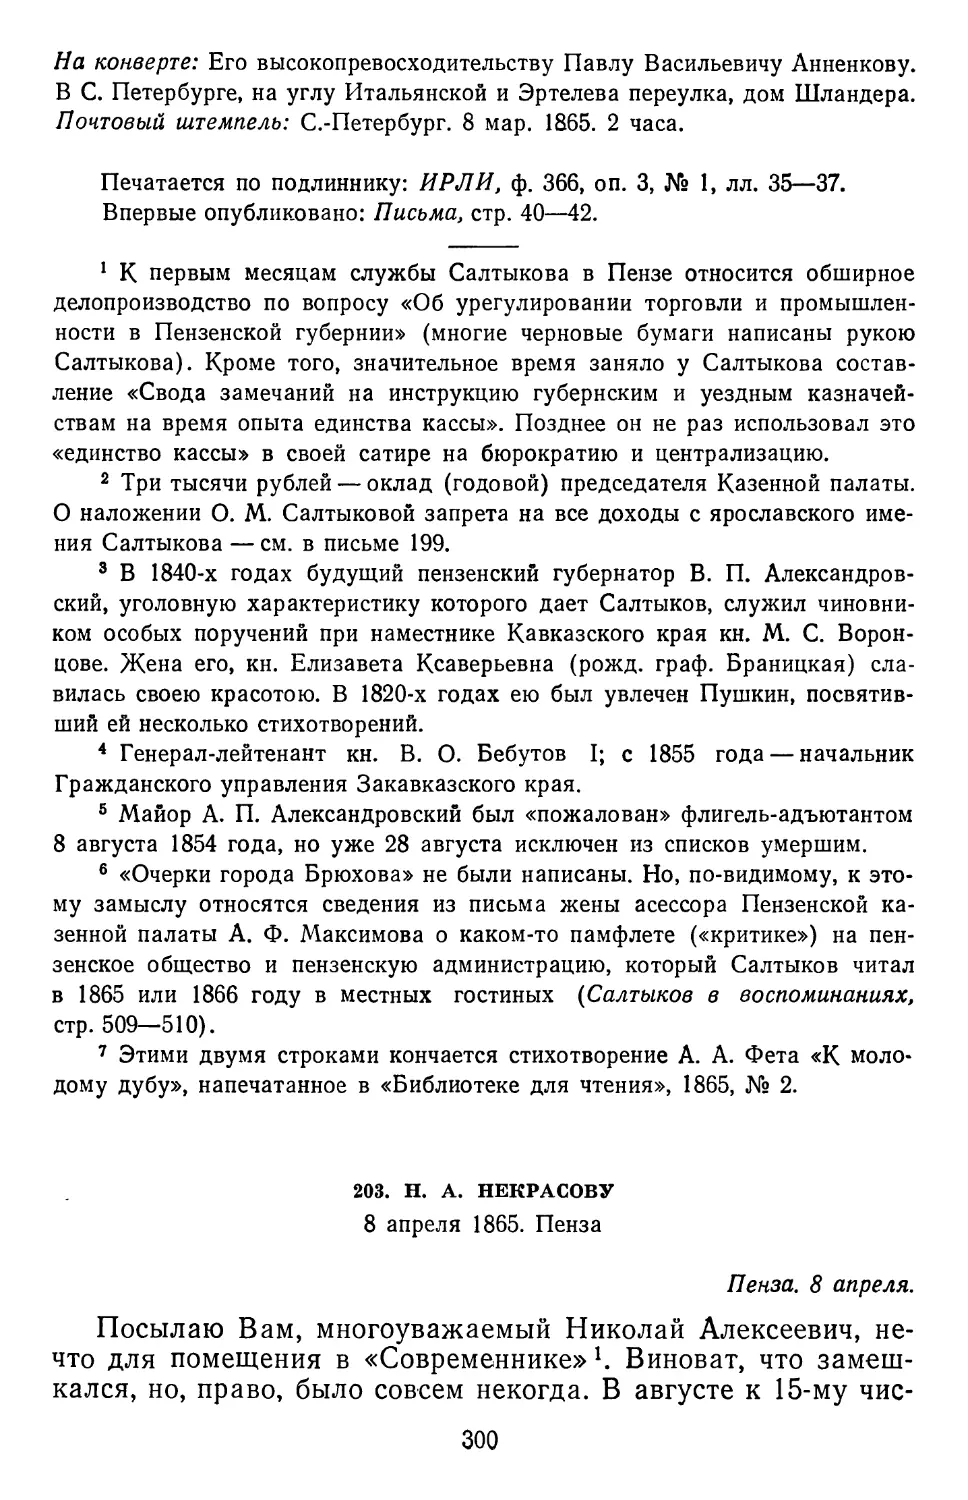 203.Н. А. Некрасову. 8 апреля 1865. Пенза